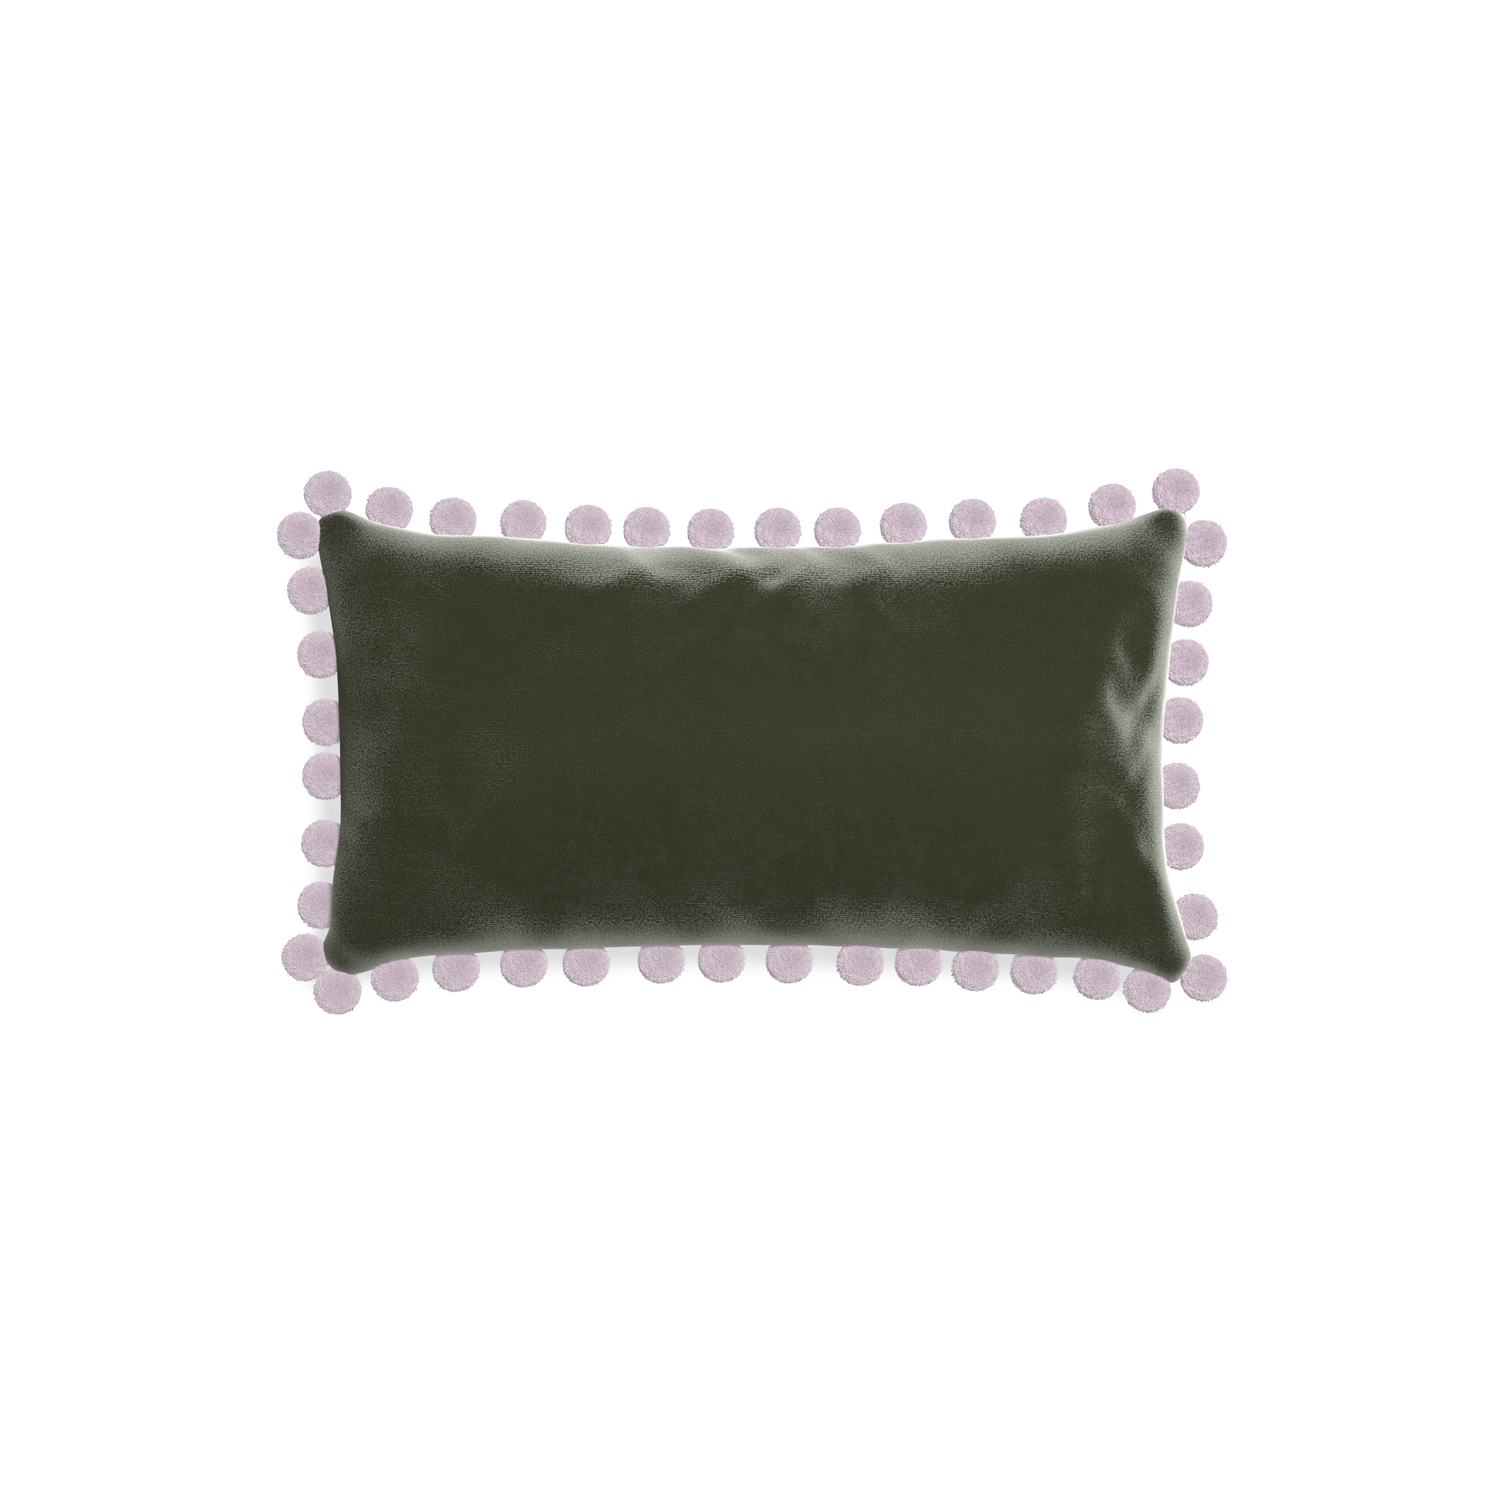 rectangle fern green velvet pillow with lilac pom poms